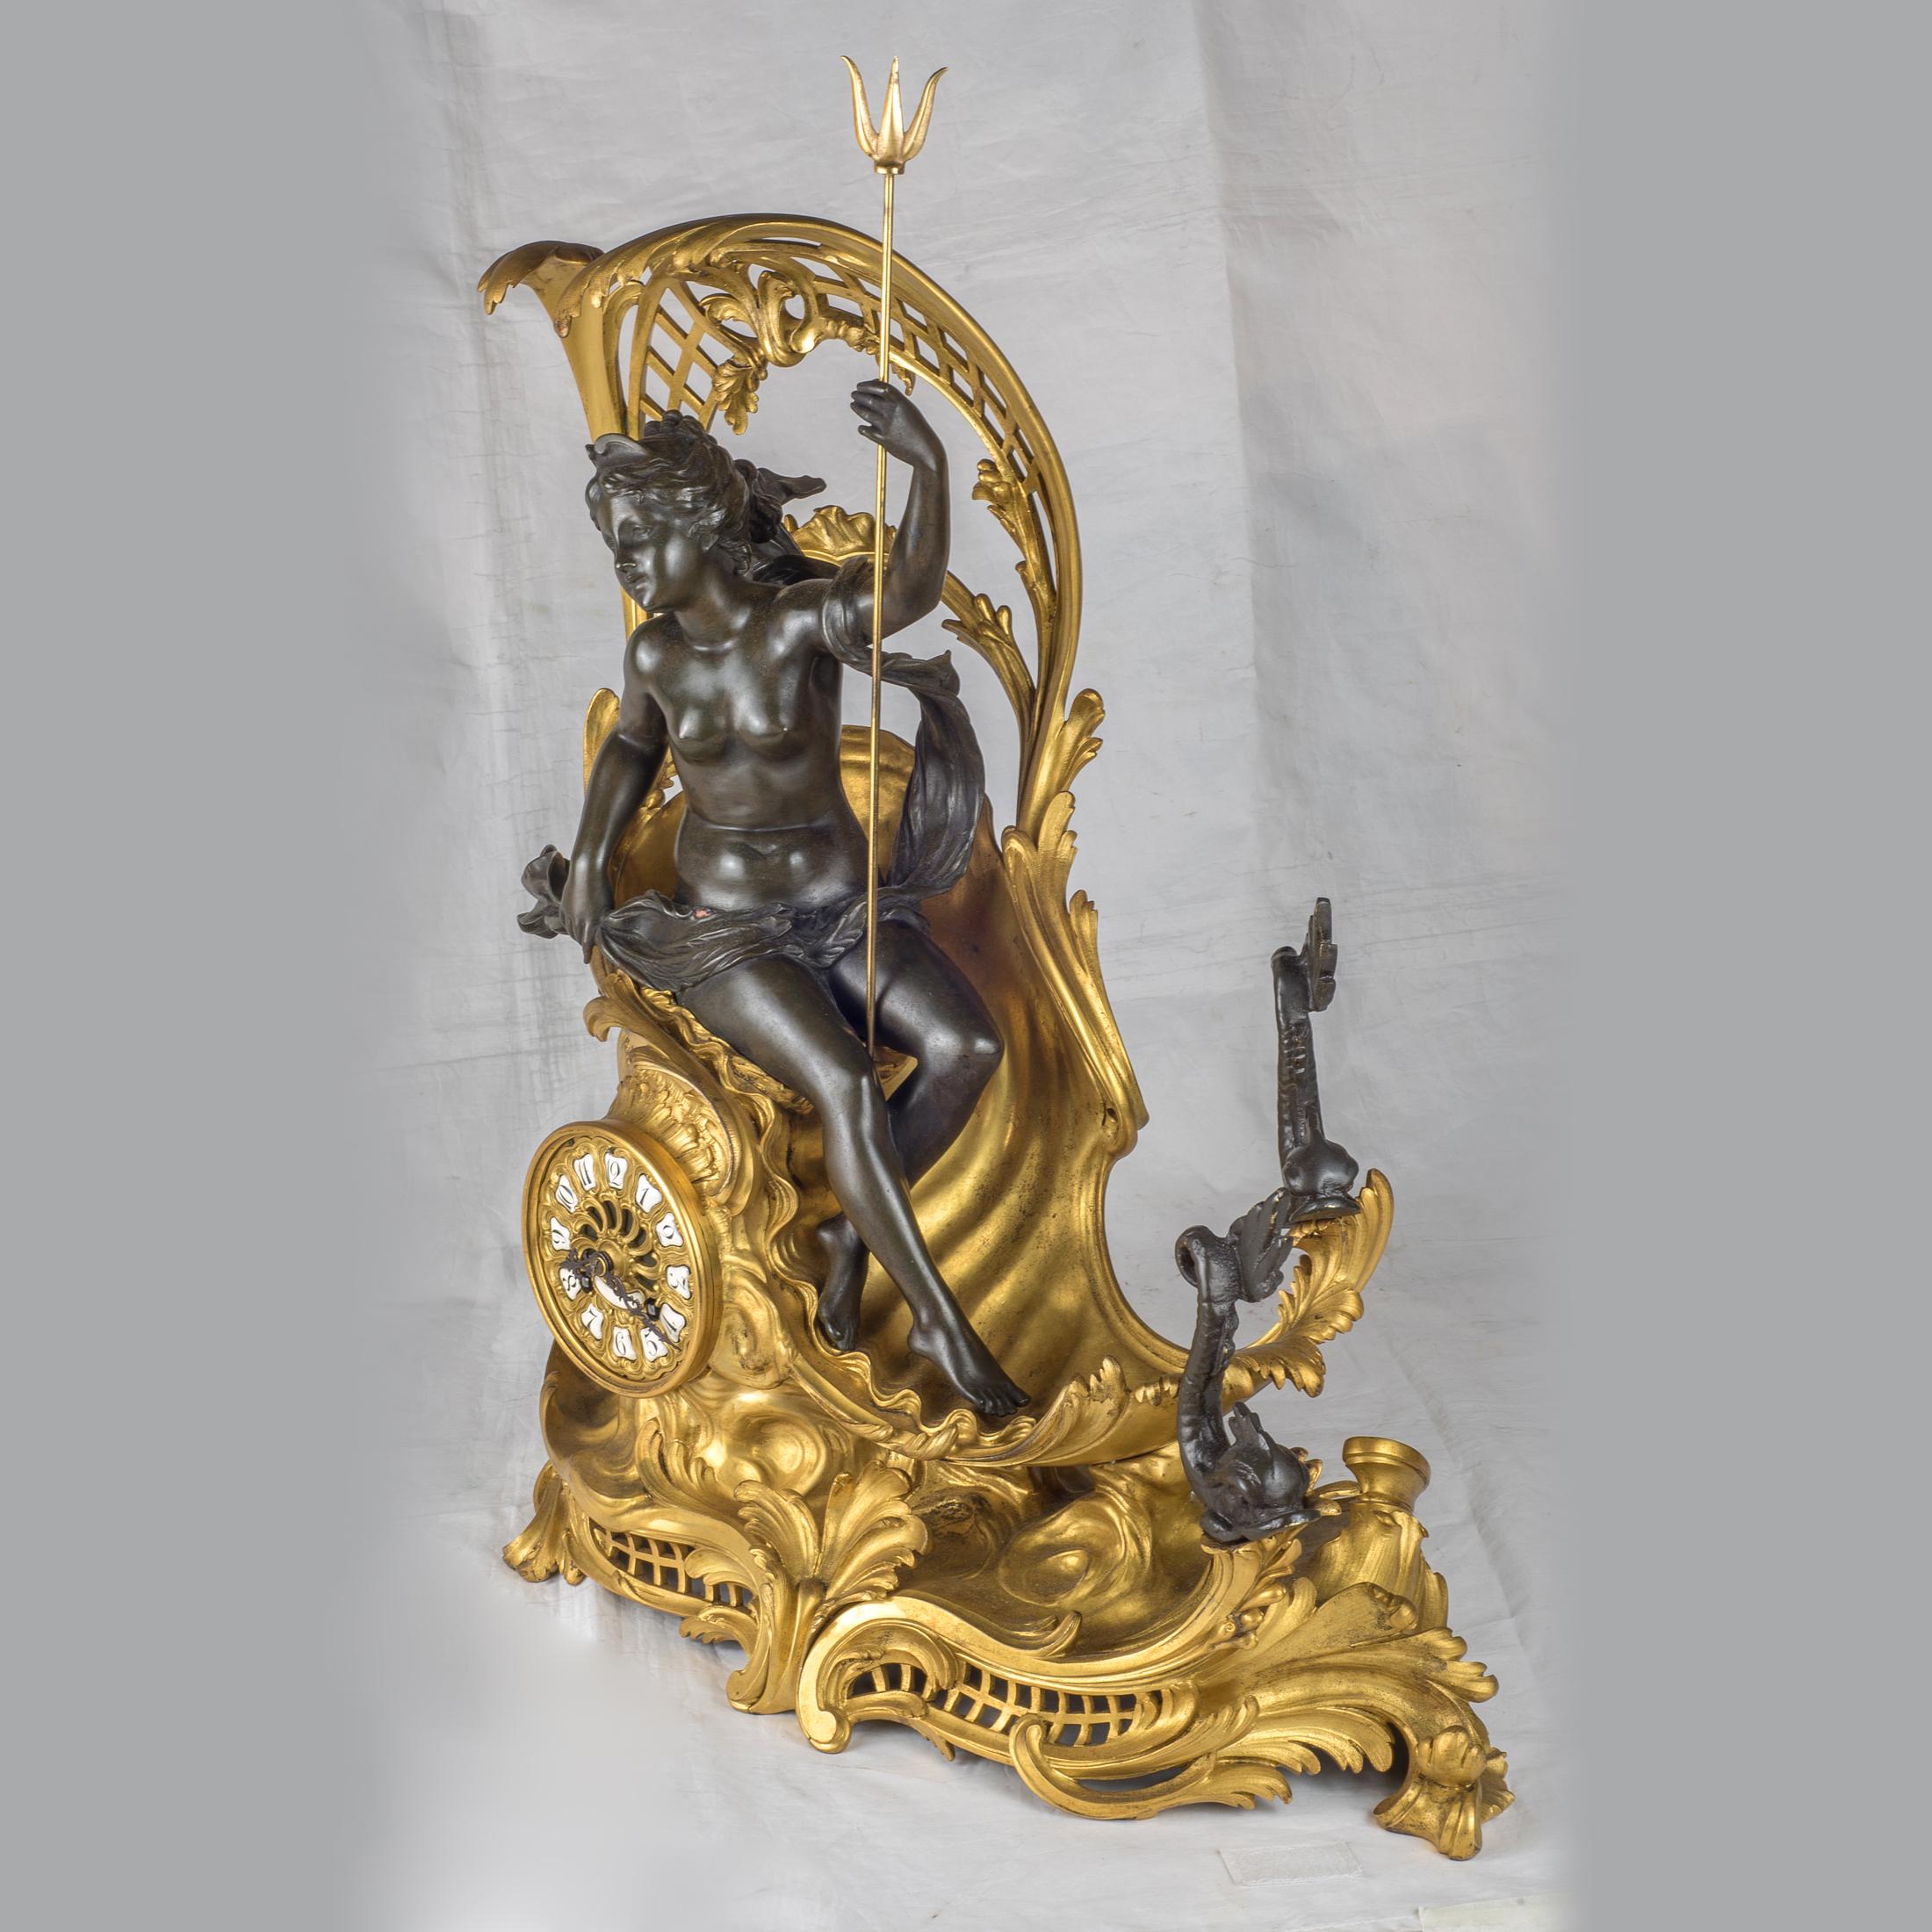 Pendule de cheminée en bronze doré et patiné représentant le char d'Amphitrite tiré par des dauphins, attribuée à F. Like.

Origine : Français
Date : 19ème siècle
Dimension : 21 x 18 x 8 pouces.